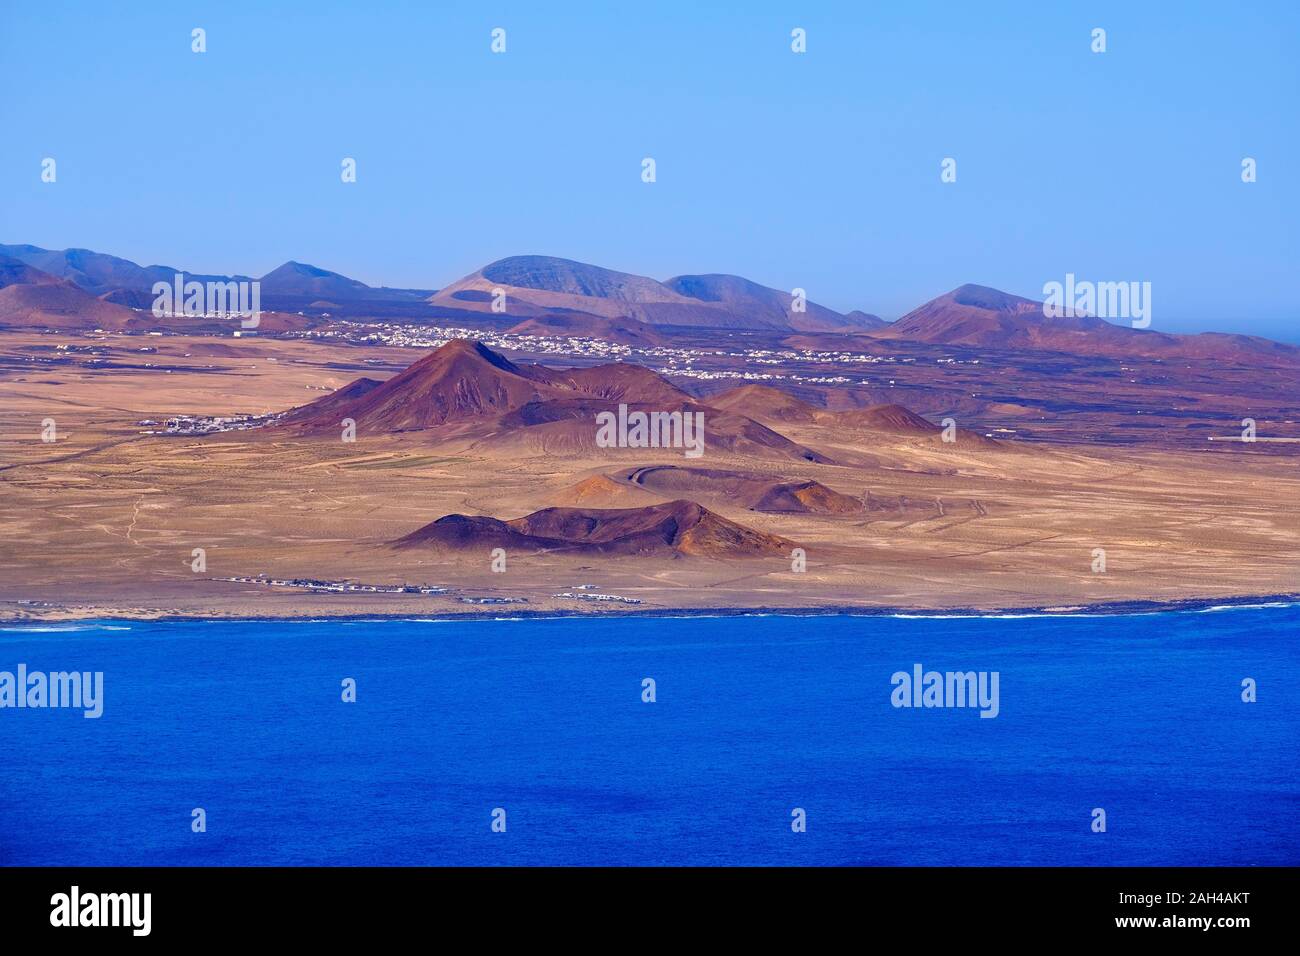 España, Islas Canarias, Tinajo, vista panorámica del litoral volcánico de la isla de Lanzarote Foto de stock